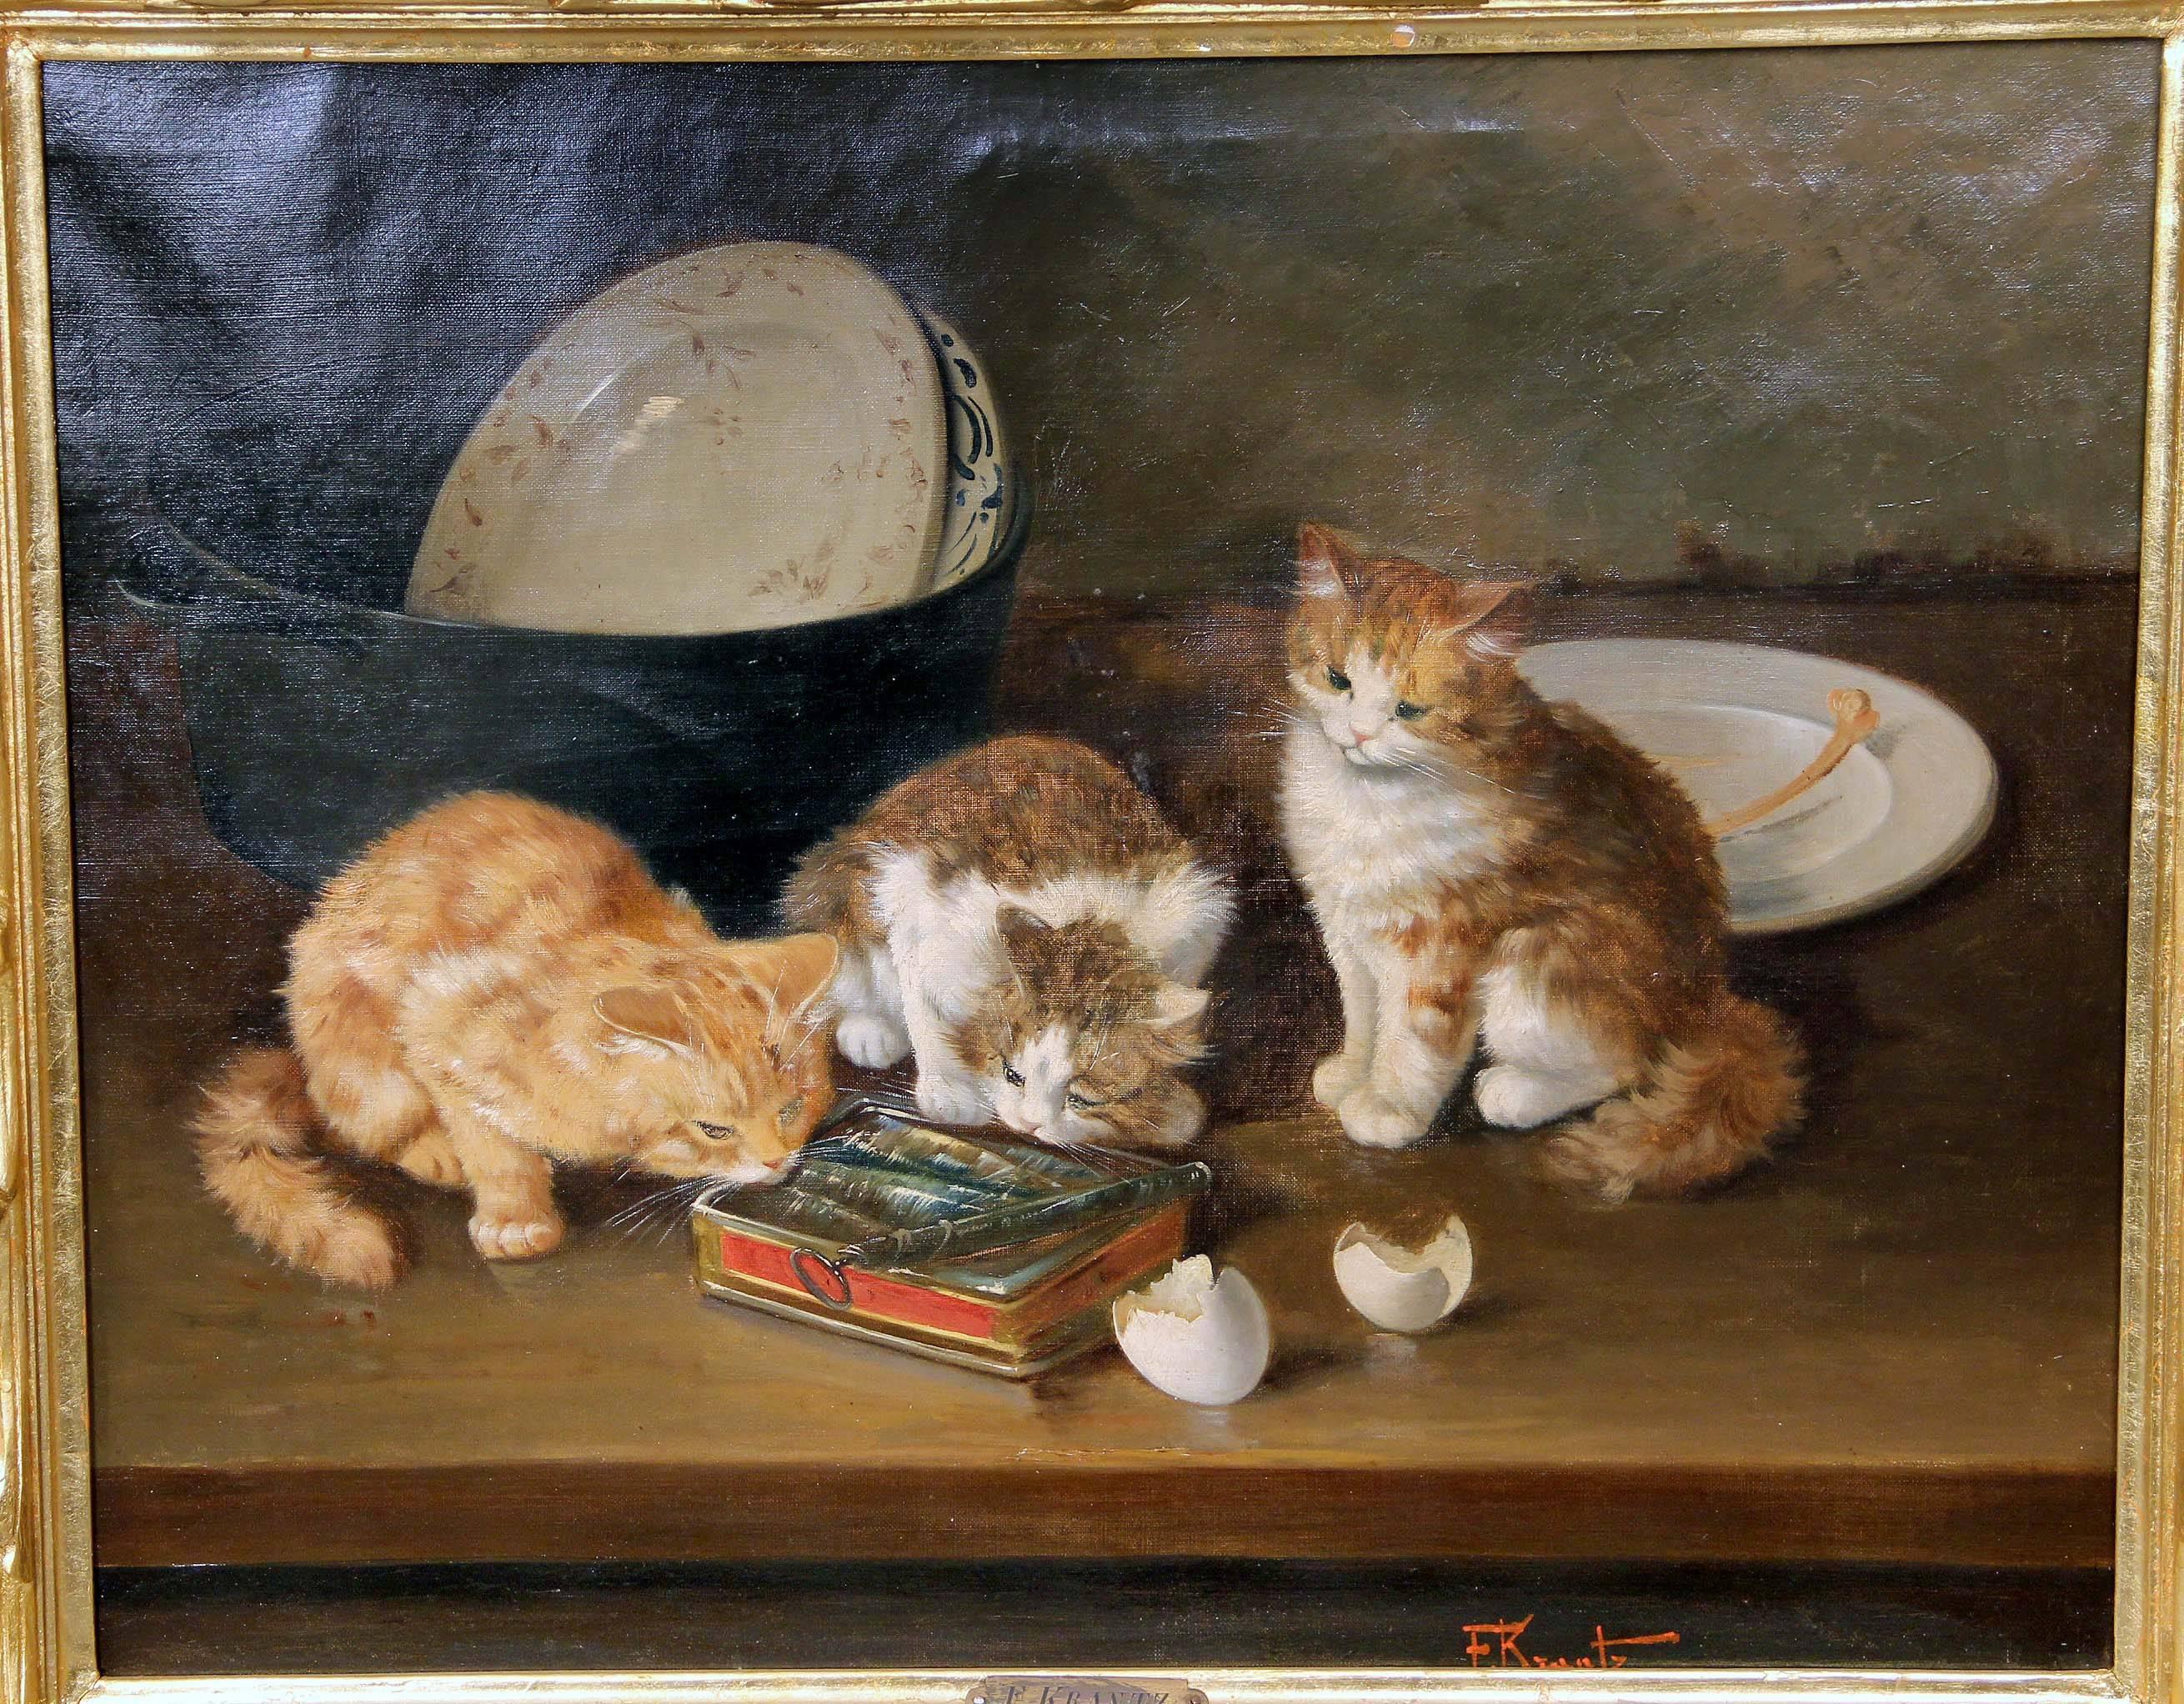 Une belle paire de peintures de chatons datant de la fin du 19e siècle et du début du 20e siècle.

Par F. Krantz (allemand).

Huile sur toile, avec des chatons curieux. Un tableau avec quatre chatons et un piège à souris, l'autre avec trois